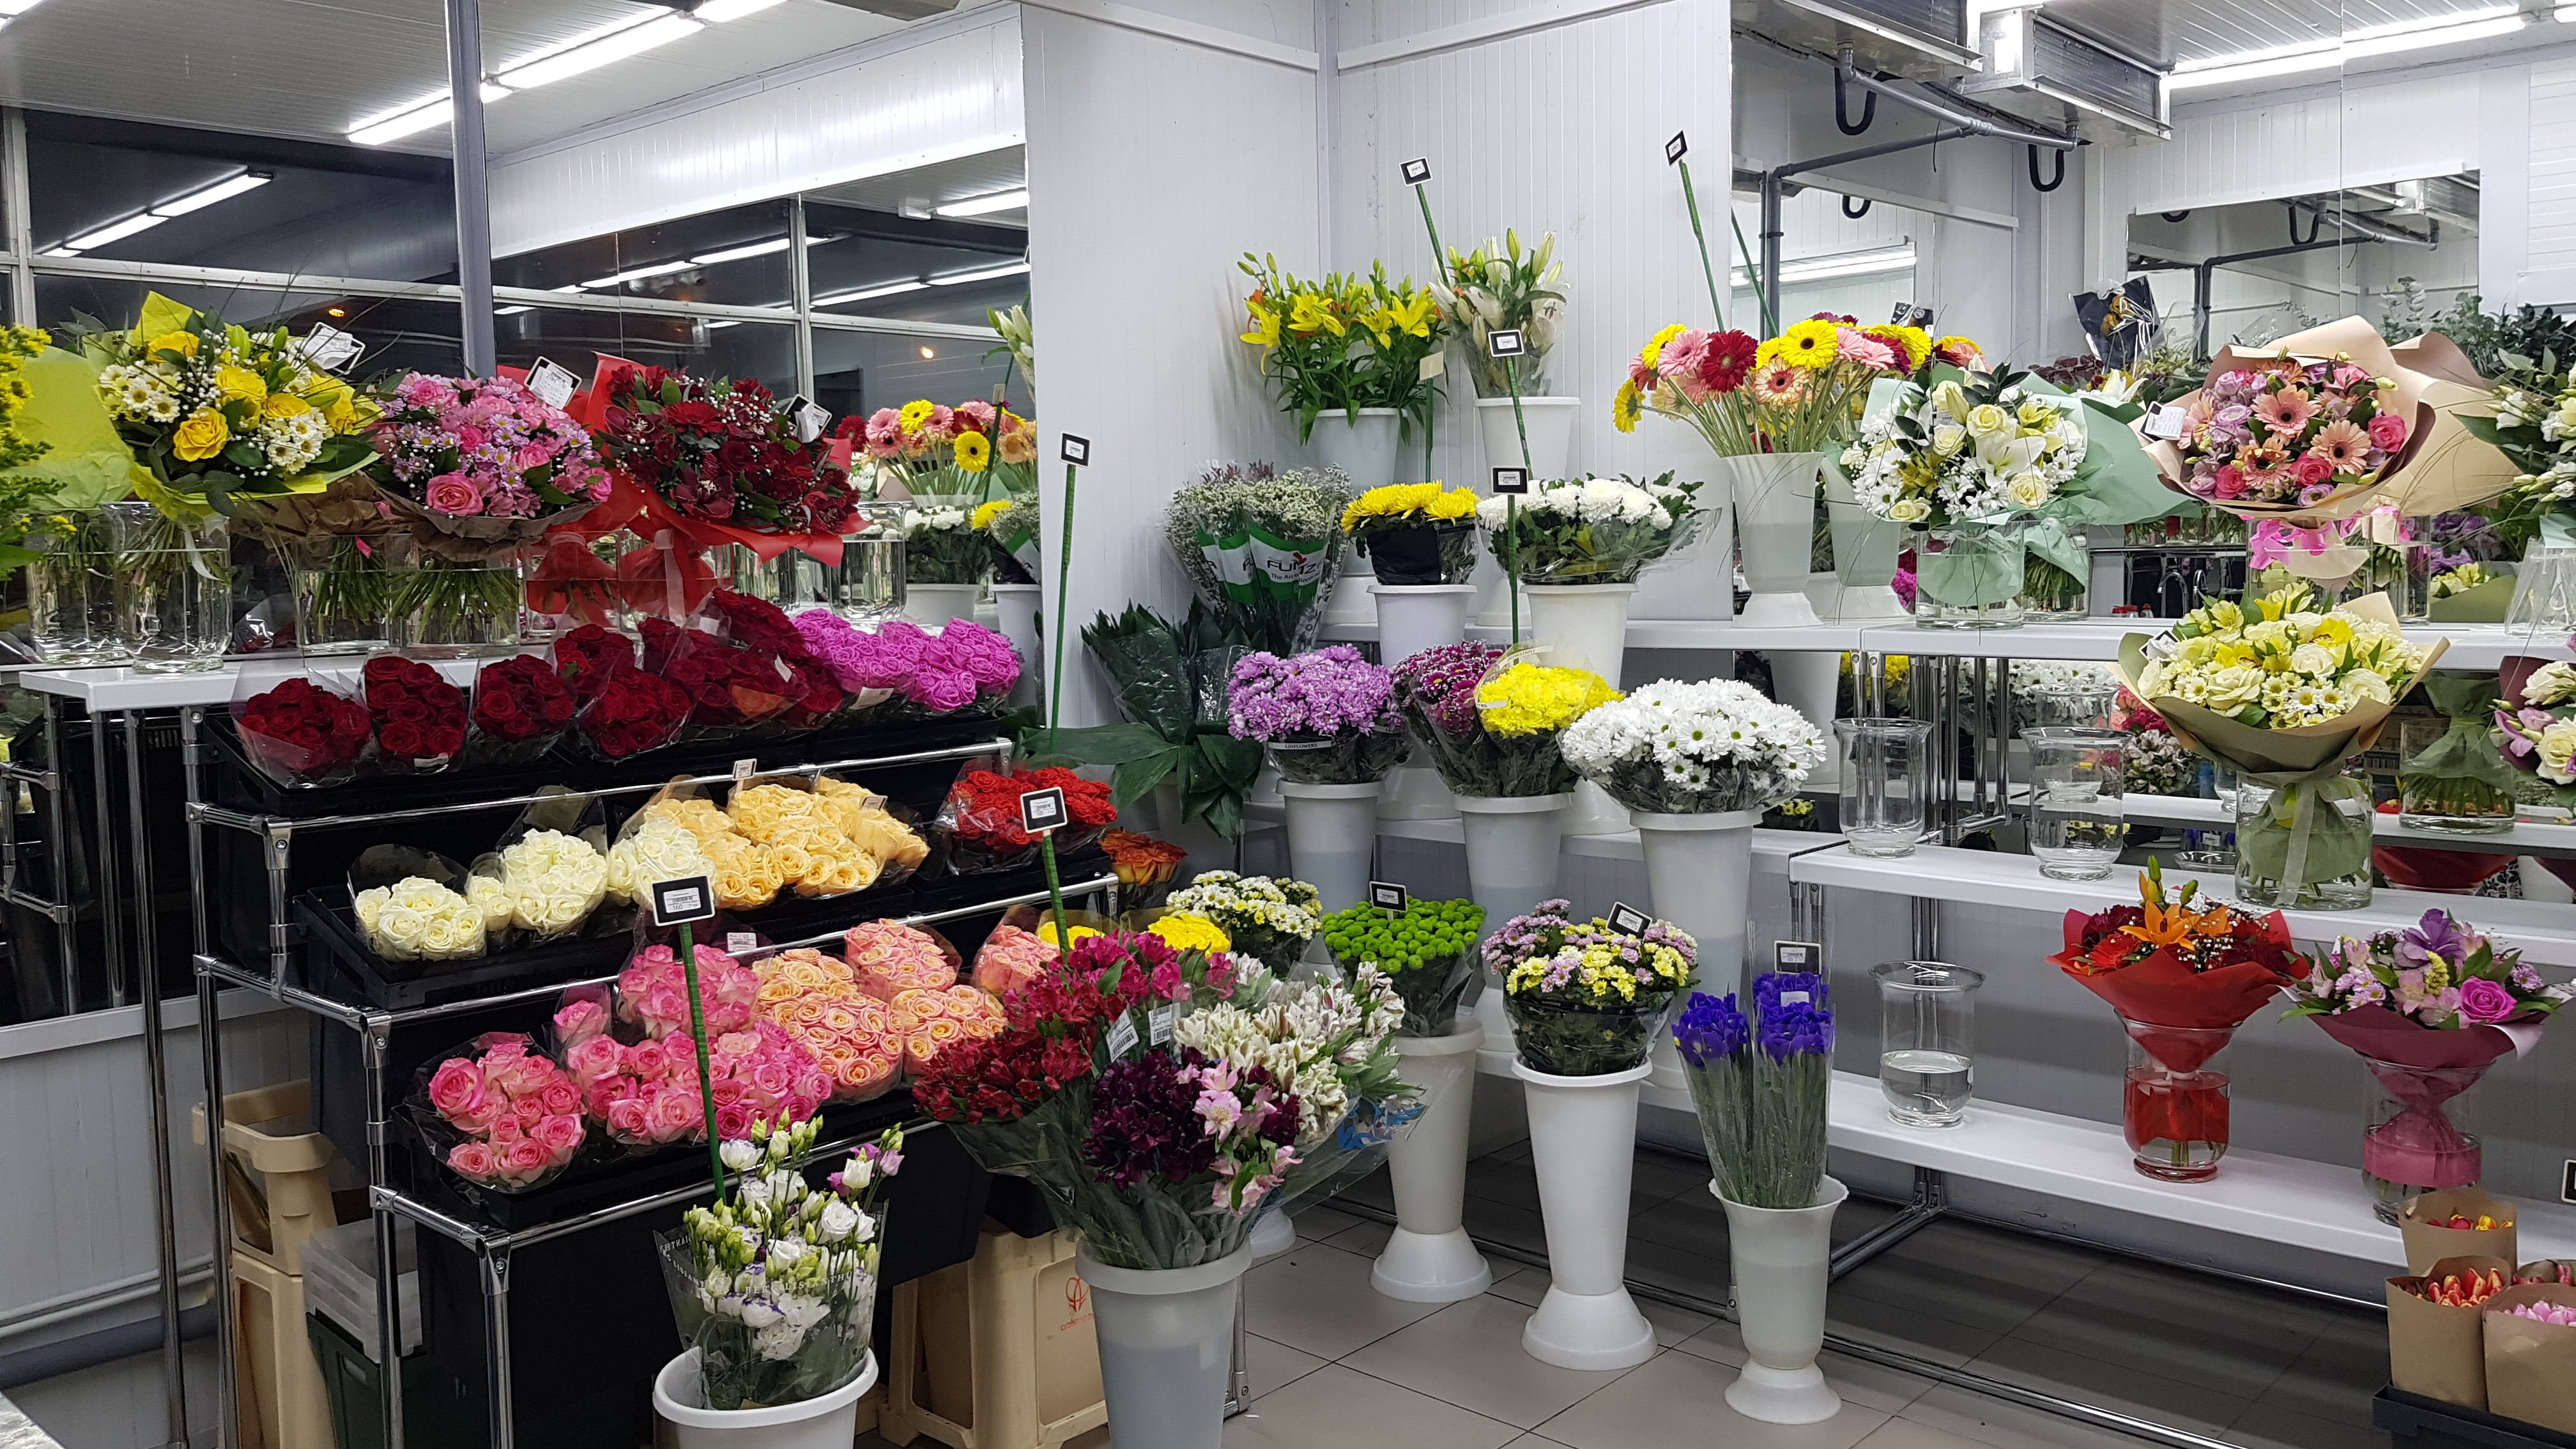 Цены Цветов В Магазине